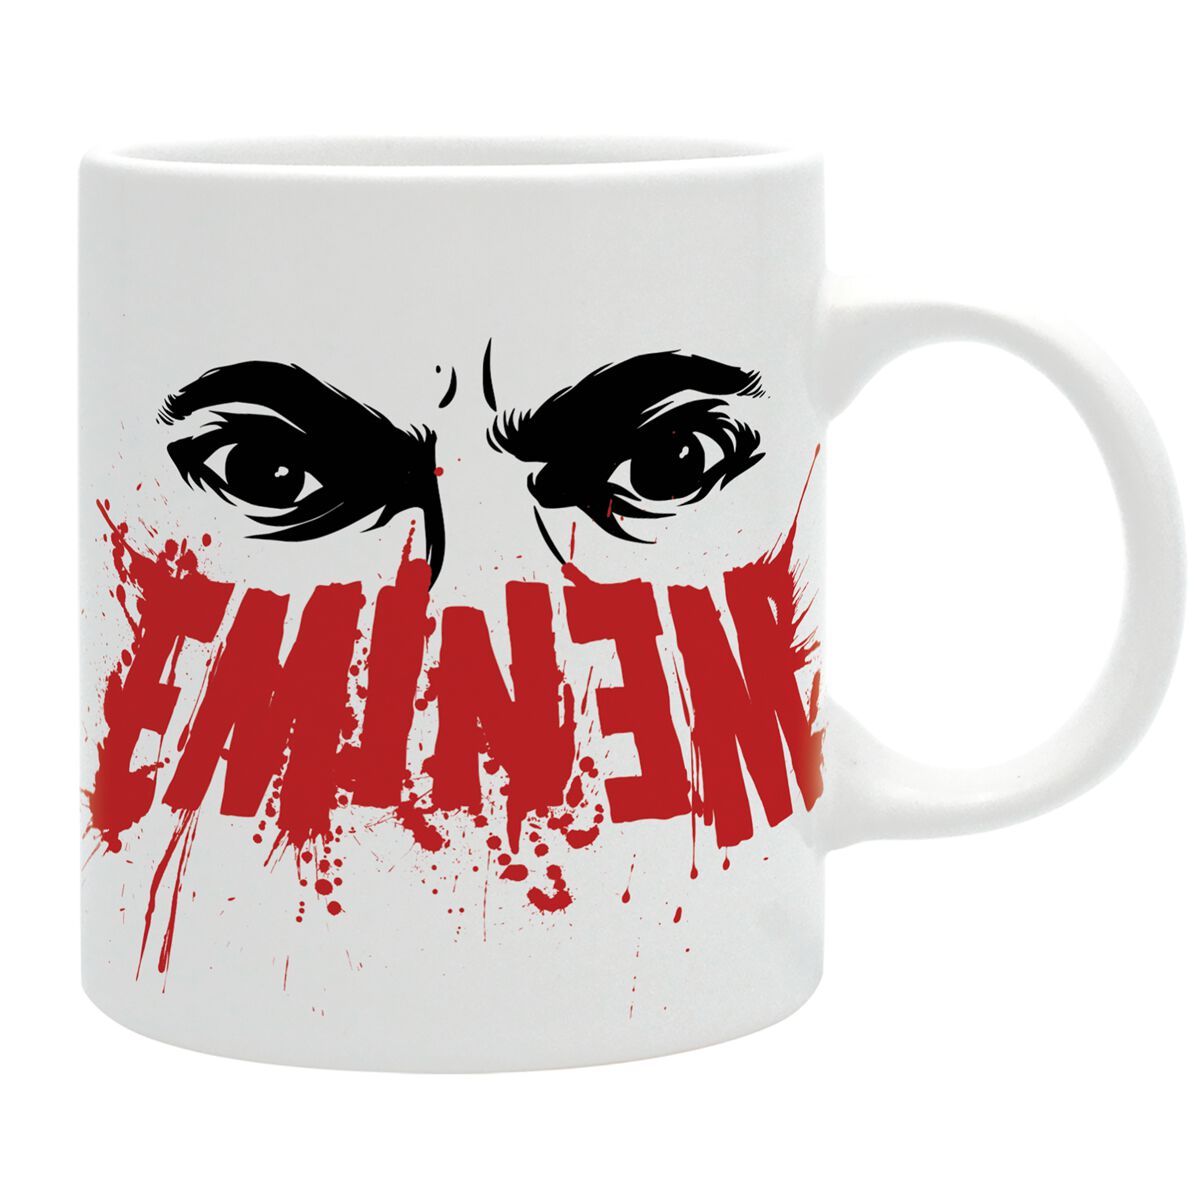 Eminem Tasse - Eyes - weiß/schwarz/rot  - Lizenziertes Merchandise! product